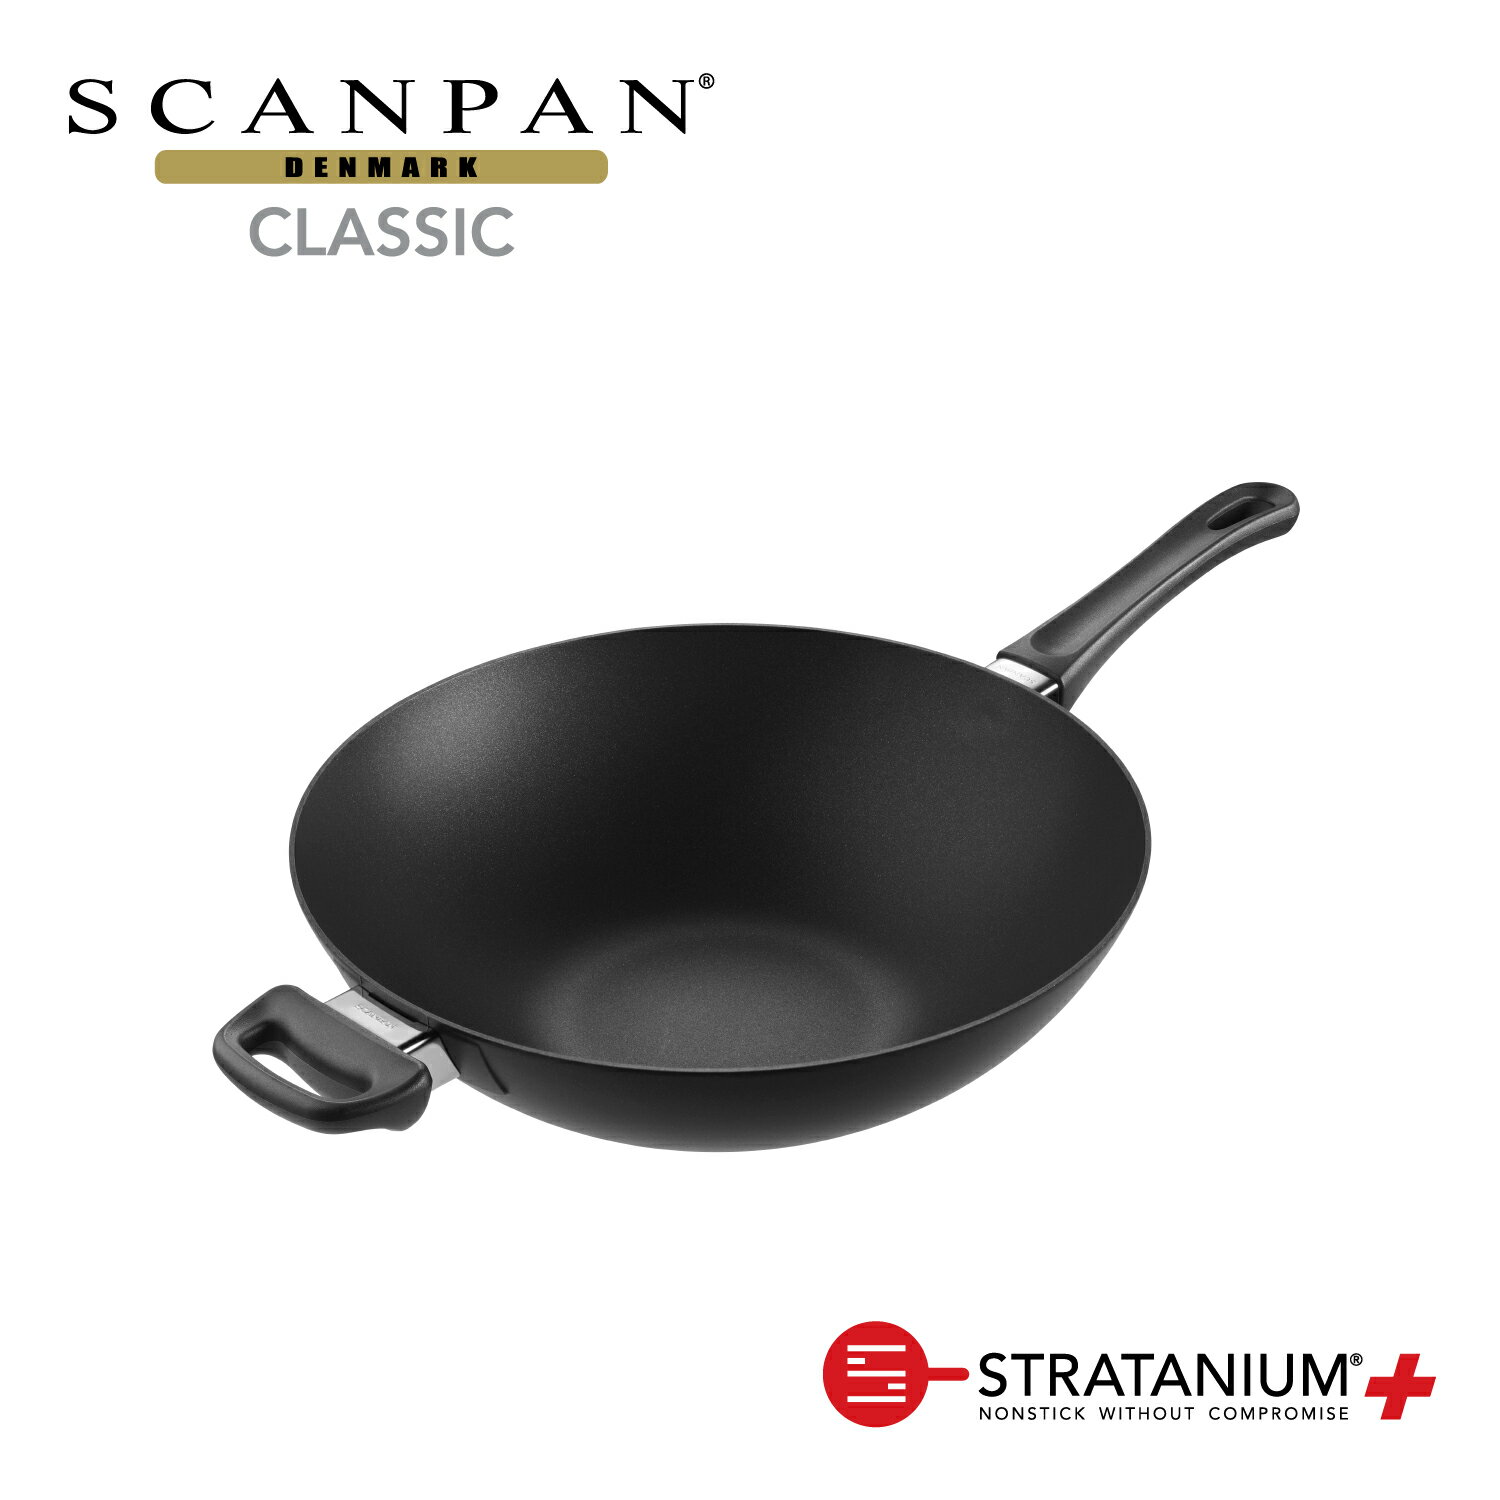 スキャンパン Classic シリーズ 32cm ウォック 中華鍋 深型フライパン 環境に配慮 オーブン調理 ノンスティック 安全なフライパン フッ素加工 SCANPAN デンマーク STRATANIUM+